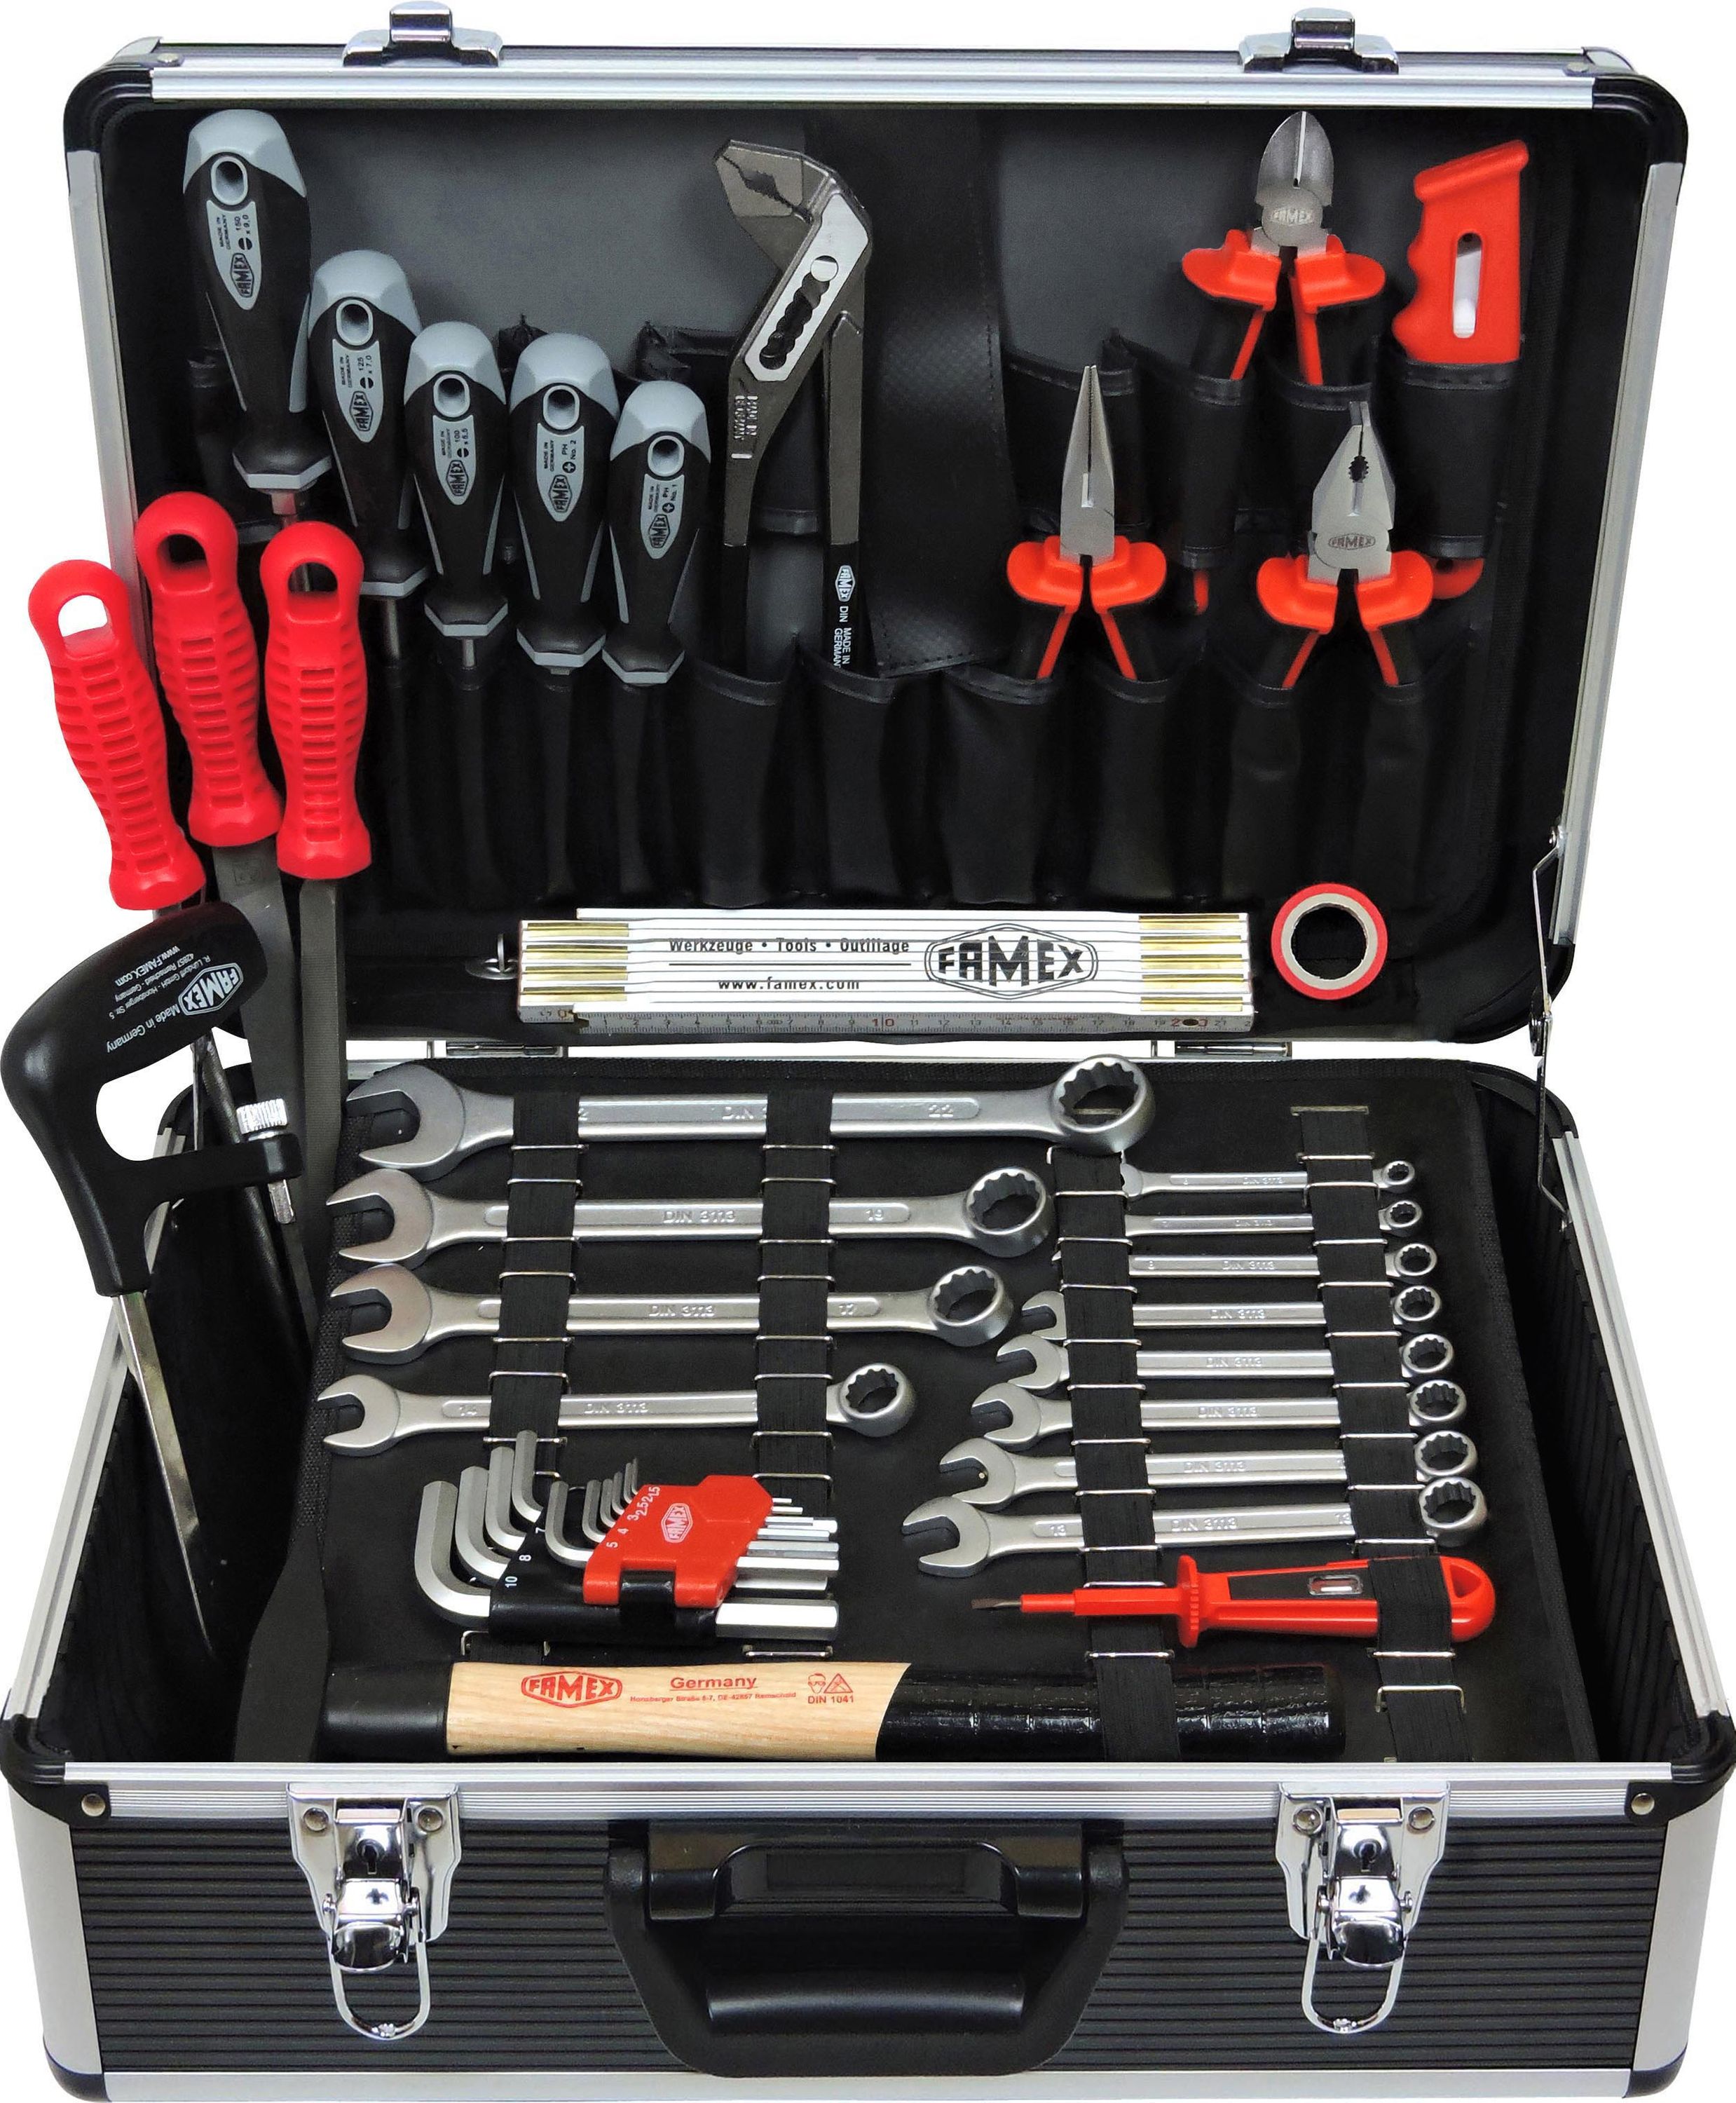 Profi Alu-Werkzeugkoffer gefüllt mit Werkzeug - Werkzeugkasten bestückt -  FAMEX 749-94